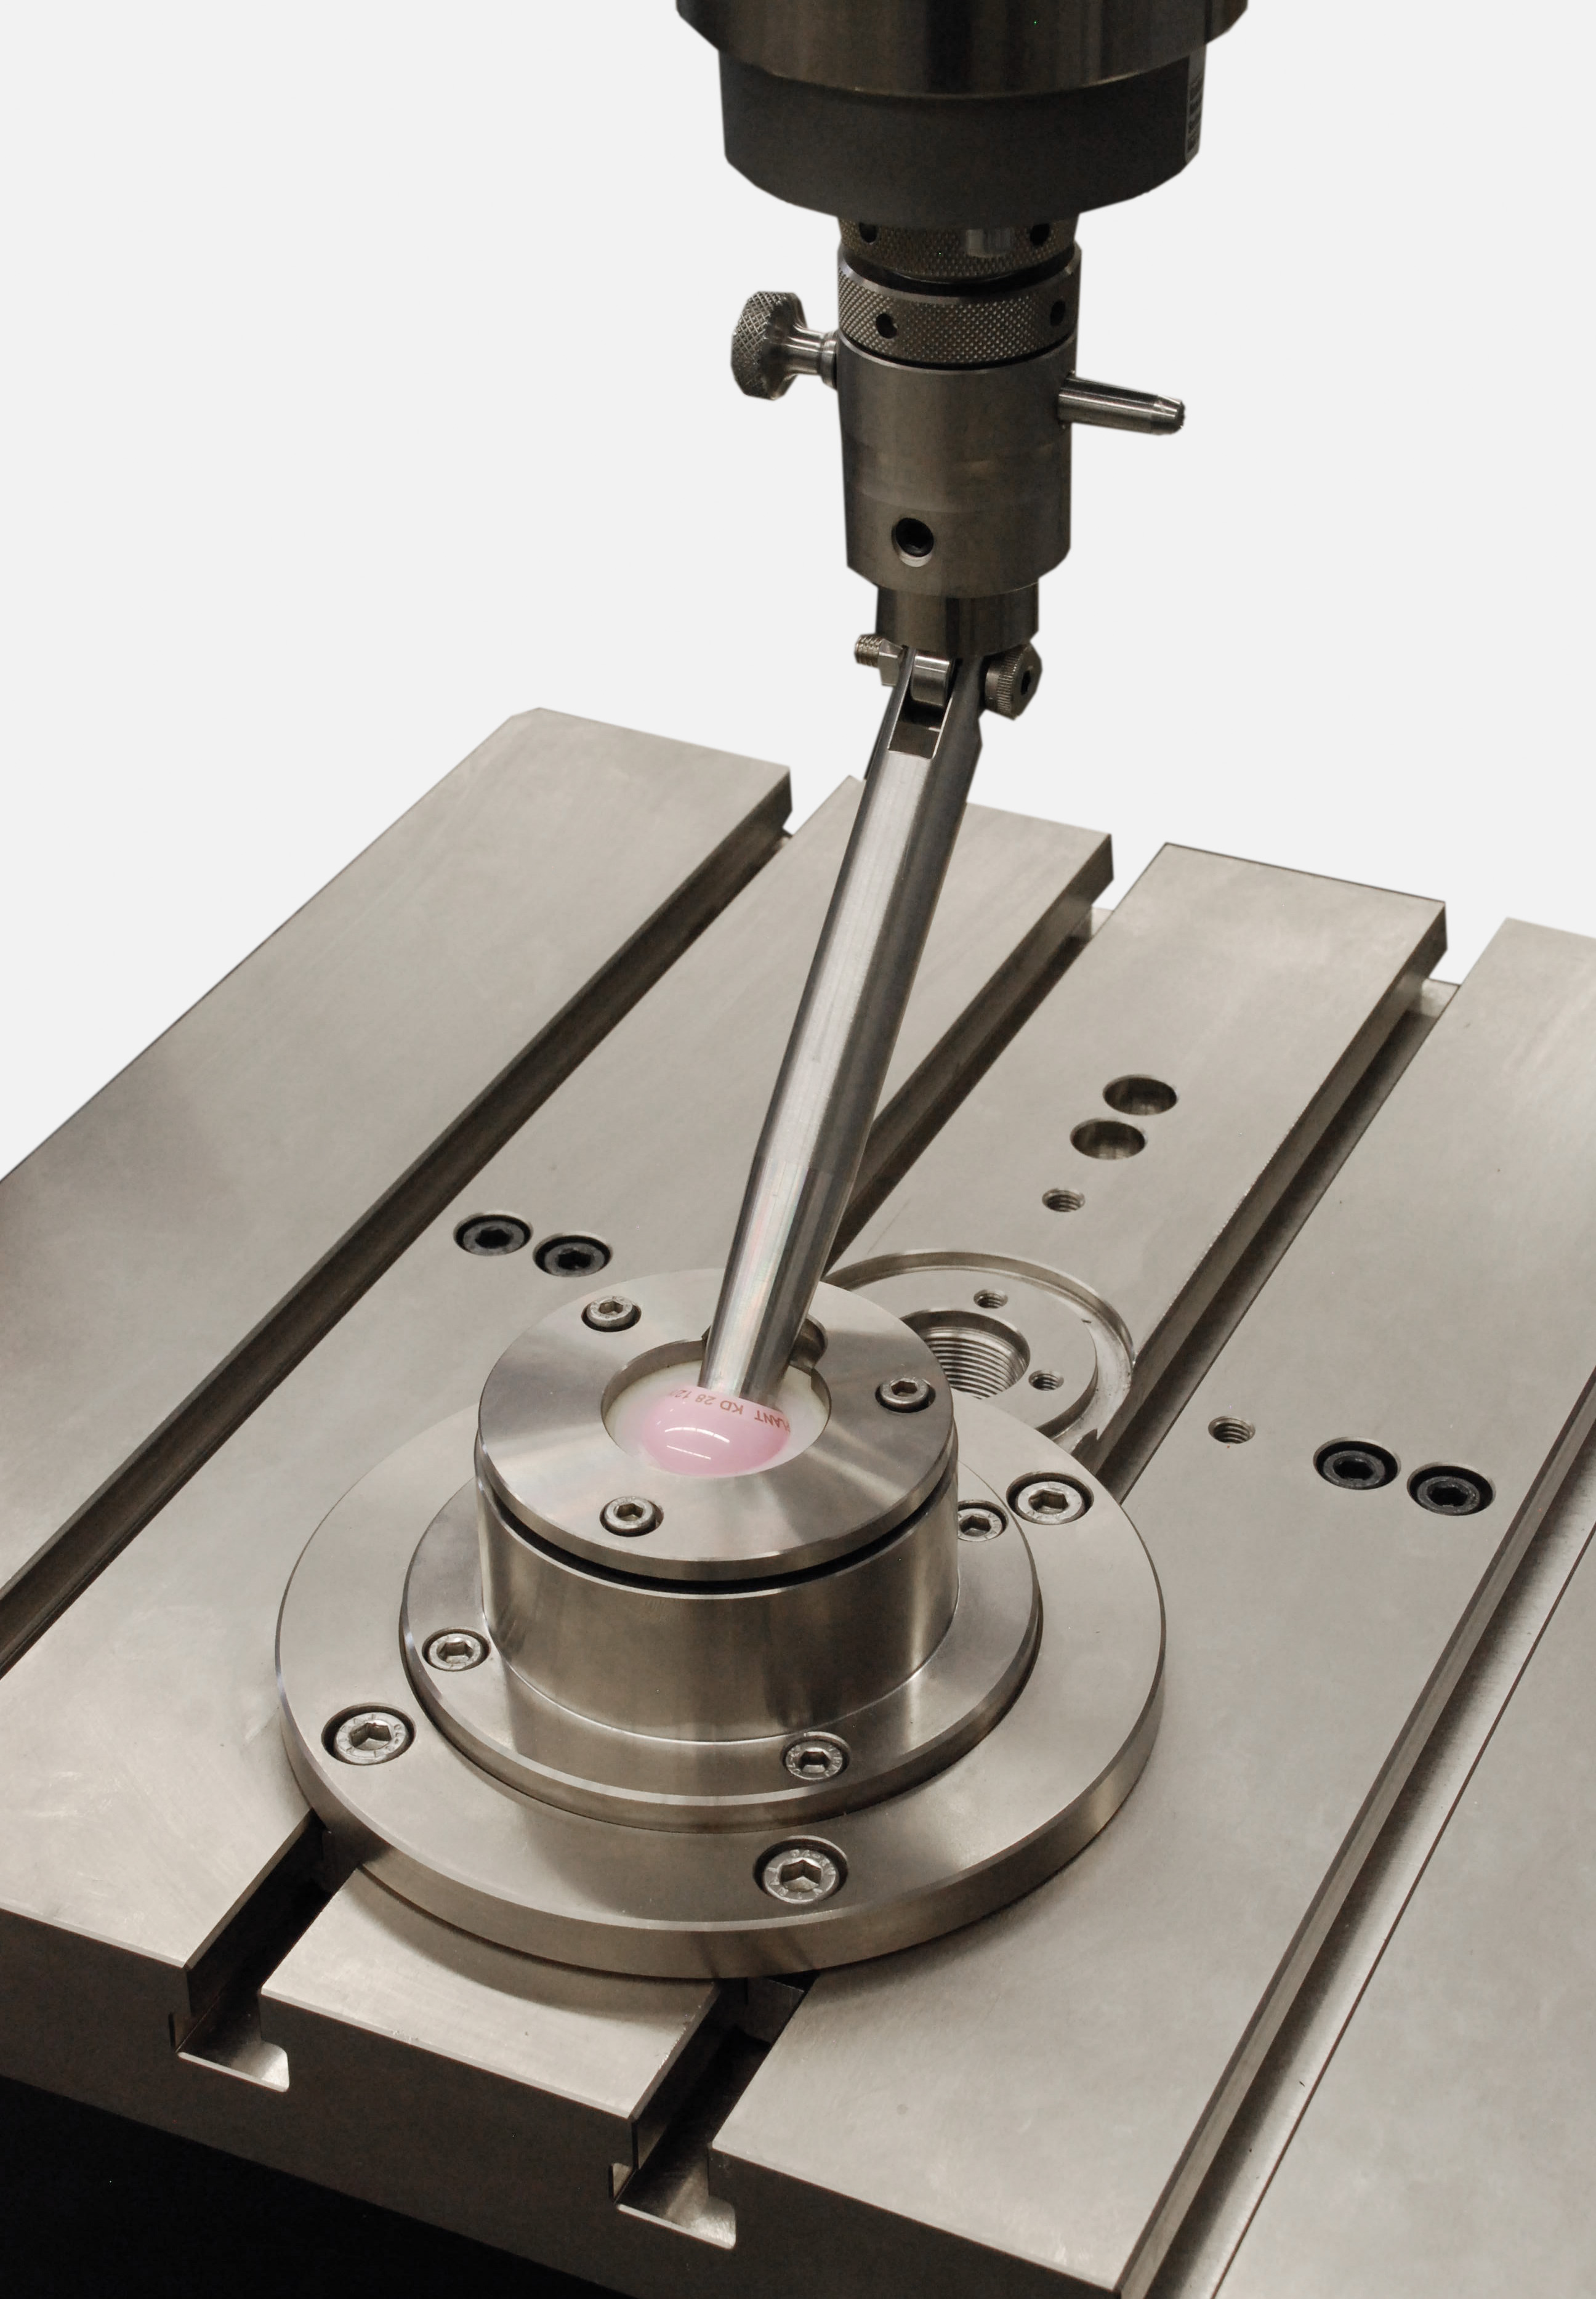 符合 ASTM F1820 標準的槓桿測試治具